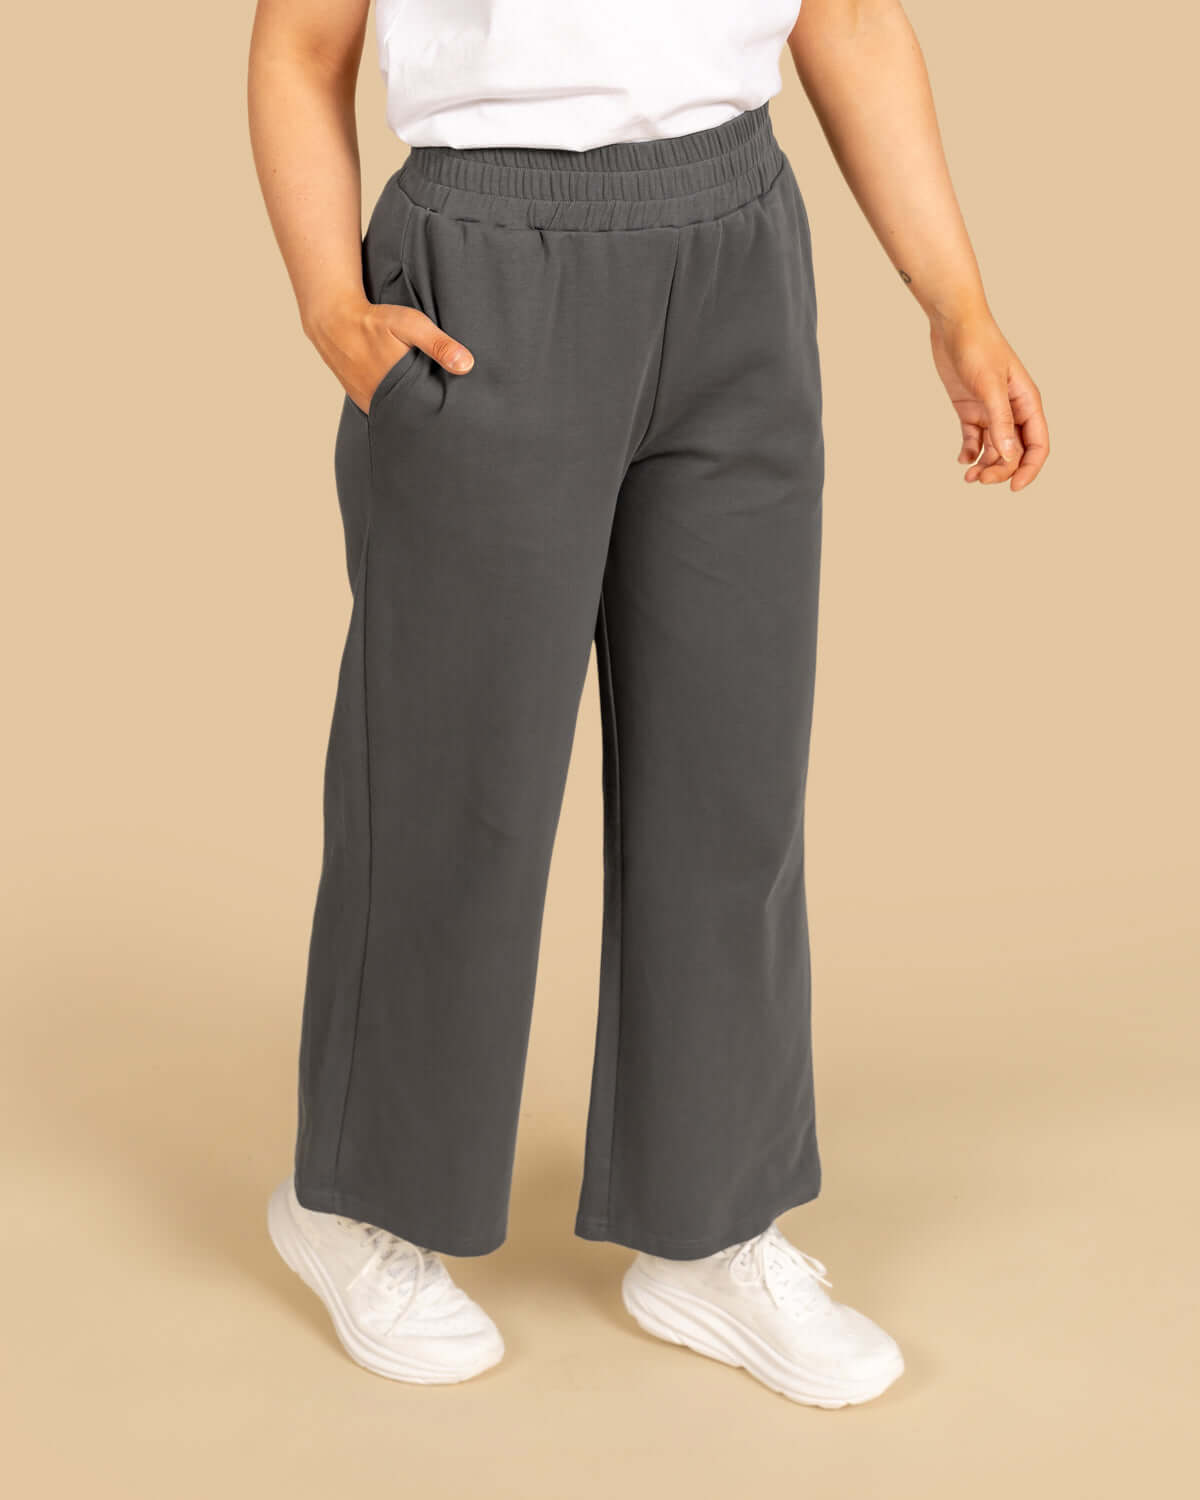 RIVA Clothing hiilenharmaan leveälahkeiset housut.